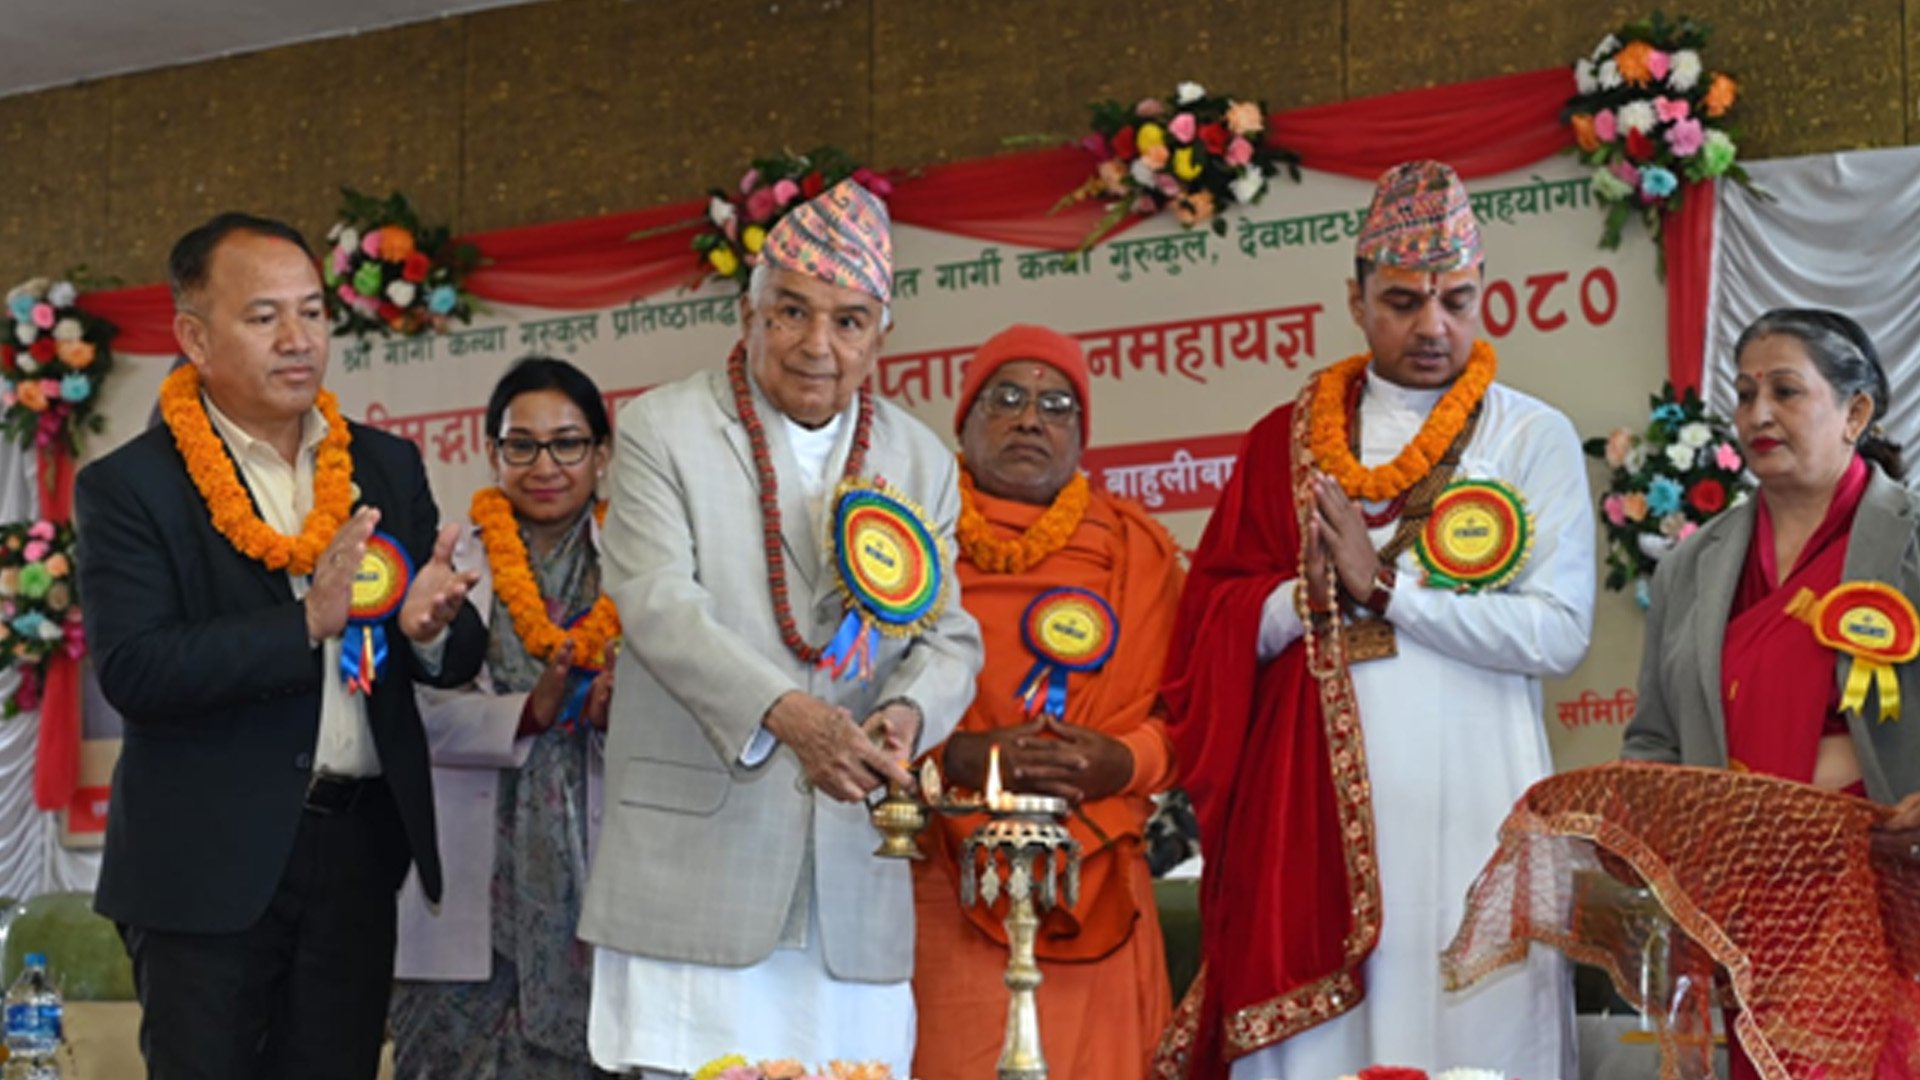 नेपाल वैदिक सनातन संस्कृतिको उद्गमस्थल हो : राष्ट्रपति पौडेल